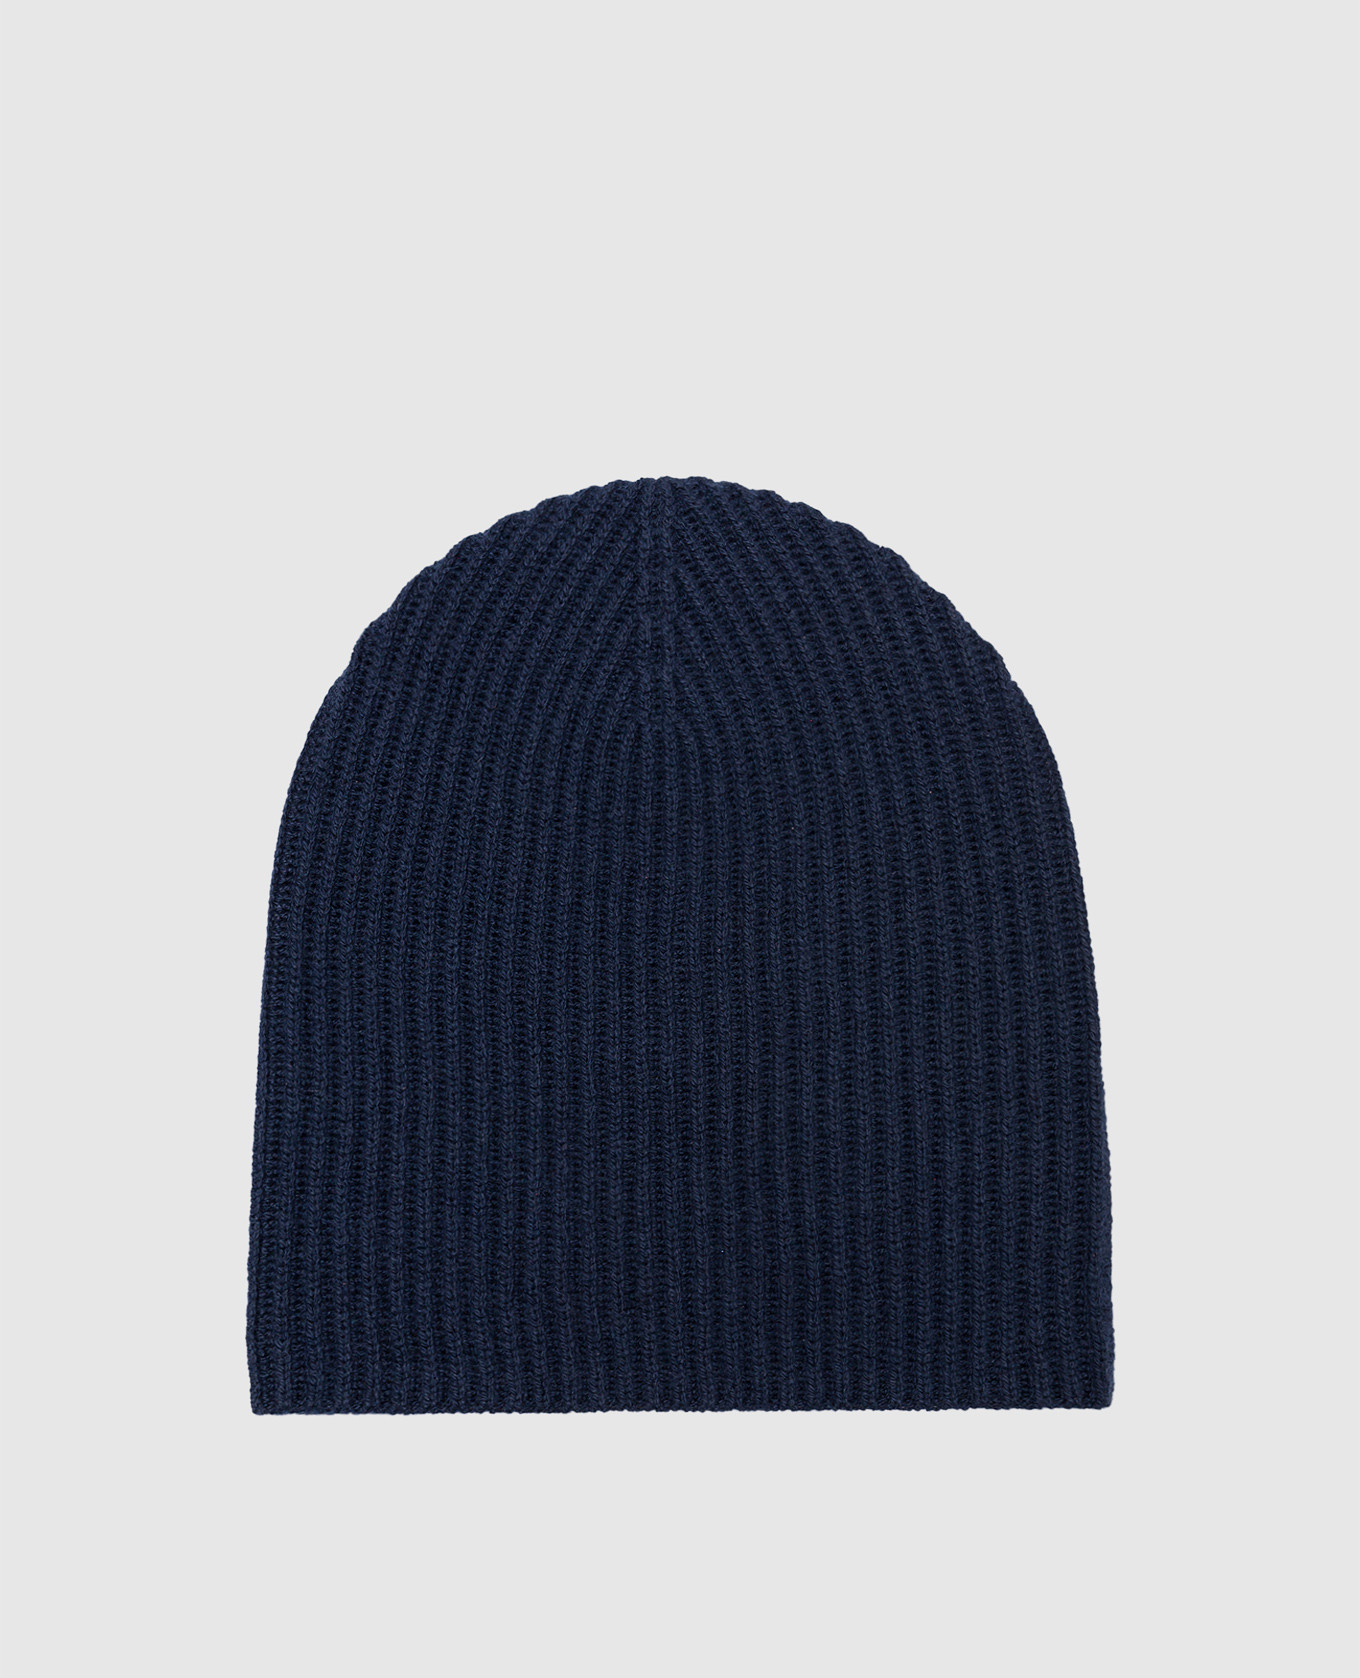 Blue cashmere hat